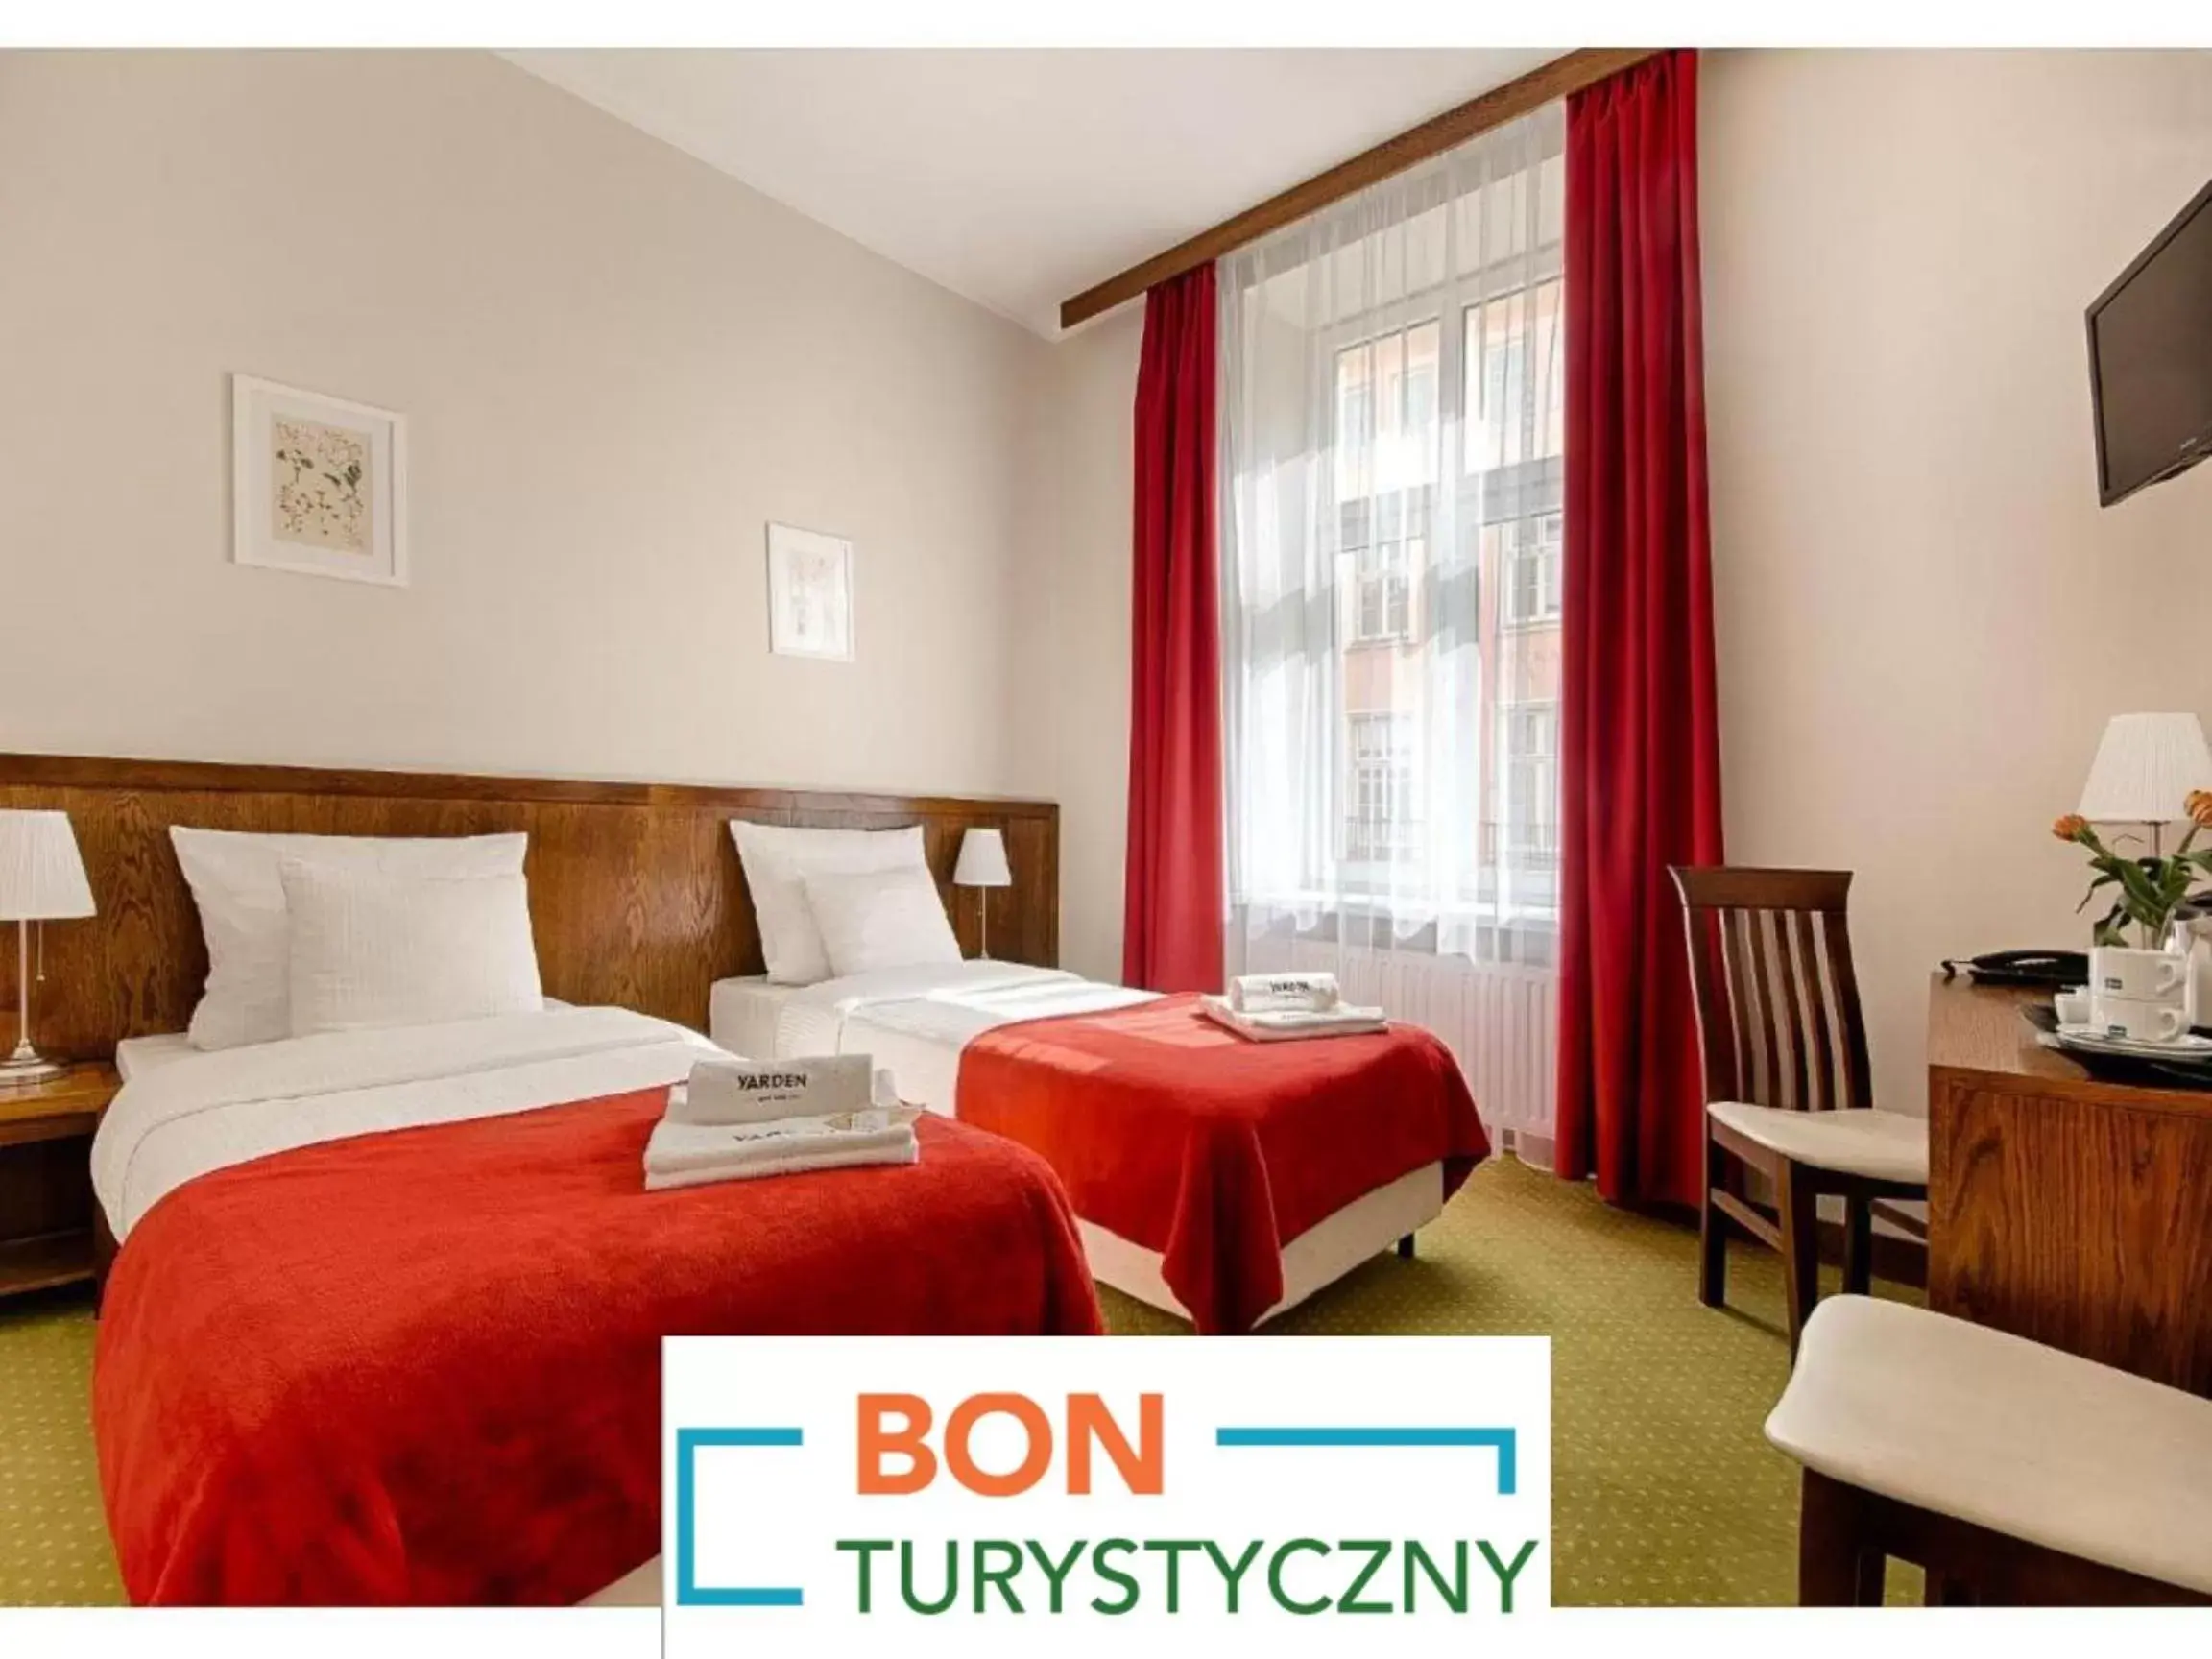 Bed in Hotel Yarden by Artery Hotels